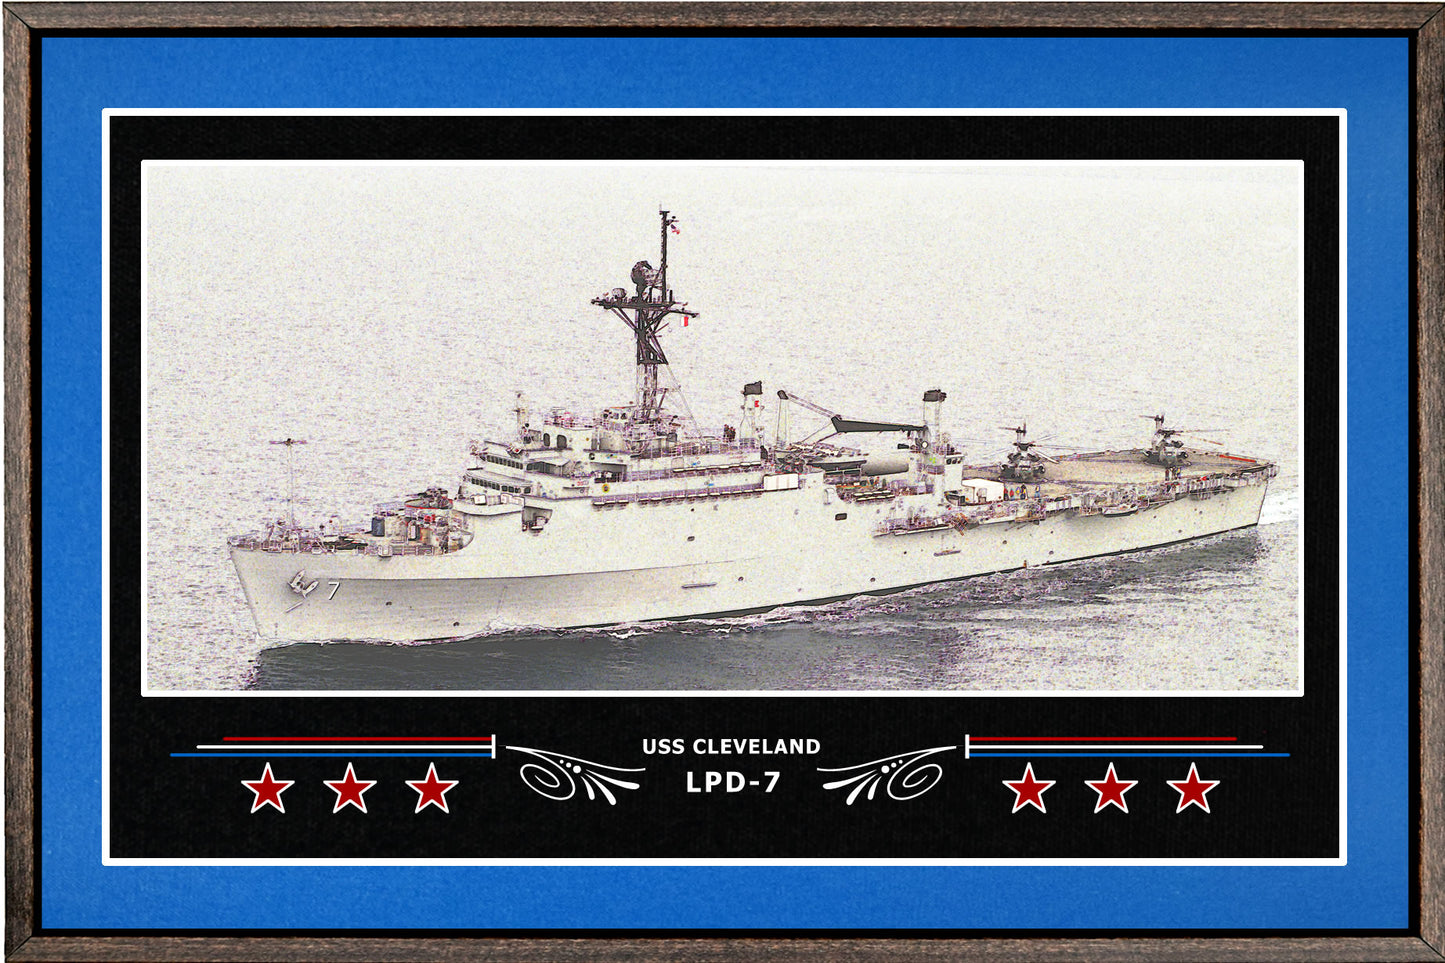 USS CLEVELAND LPD 7 BOX FRAMED CANVAS ART BLUE